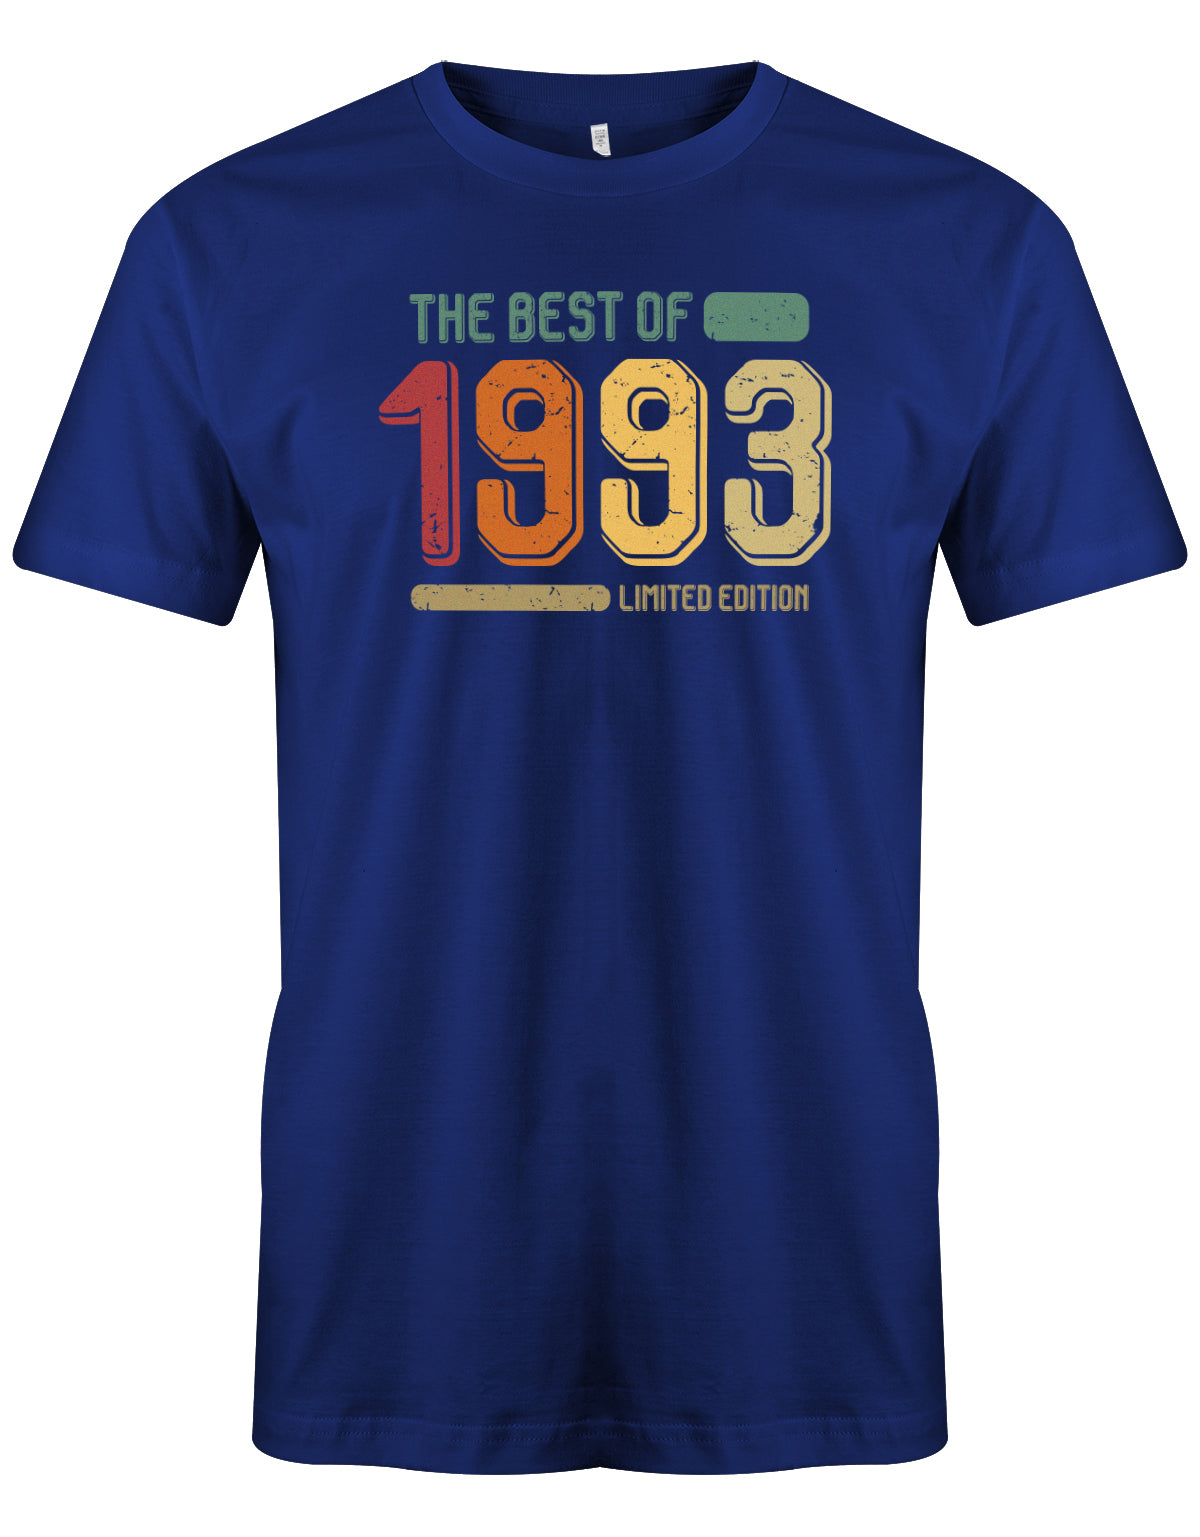 Cooles T-Shirt zum 30 Geburtstag für den Mann Bedruckt mit: The Best of 1993 Limited Edition Vintage Retro. Das 30 Geburtstag Männer Shirt Lustig ist eine super Geschenkidee für alle 30 Jährigen. Man wird nur einmal 30 Jahre. 30 geburtstag Männer Shirt ✓ 1993 geburtstag shirt ✓ t-shirt zum 30 geburtstag mann ✓ shirt 30 mann Royalblau